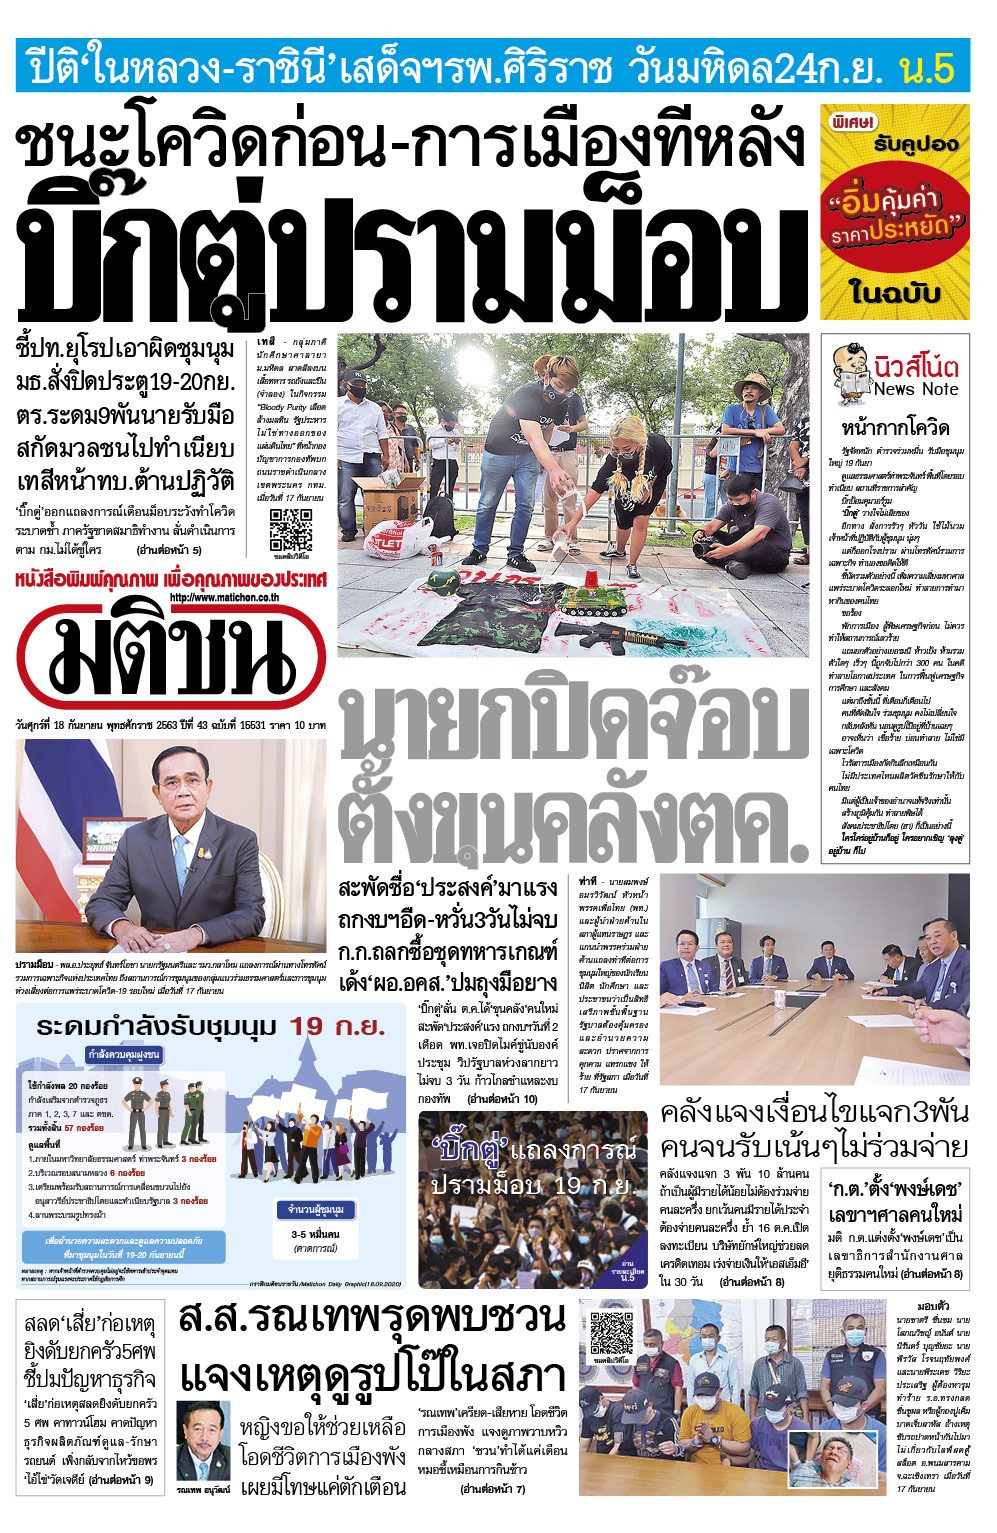 ข่าวเศรษฐกิจไทย 2567 ล่าสุด